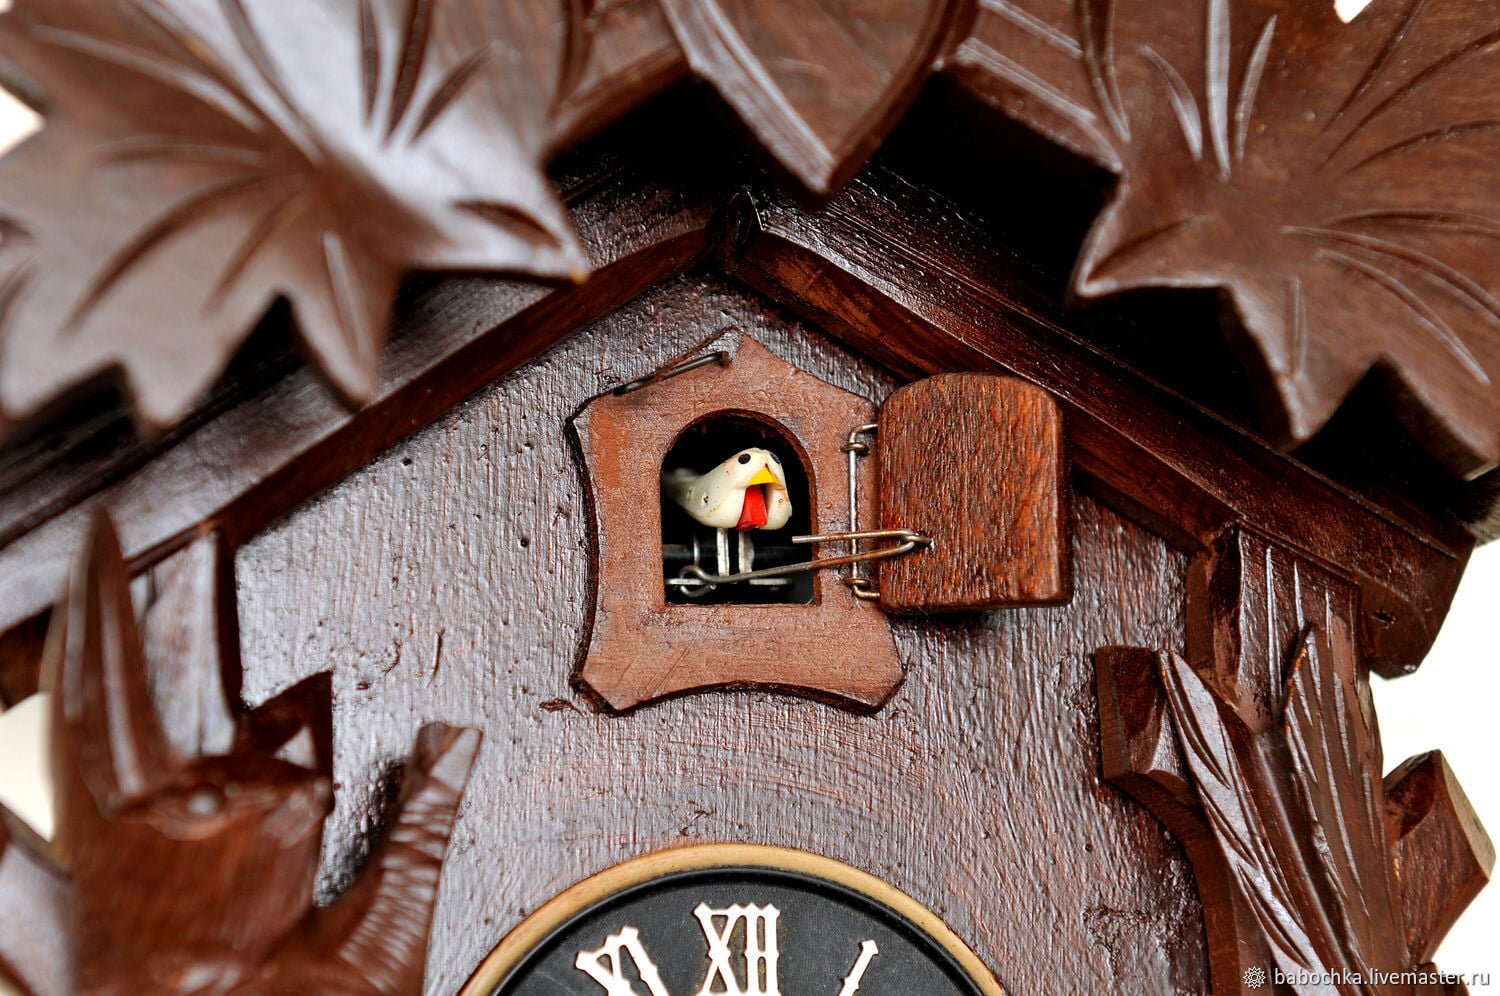 Видео часов кукушки. Часы с кукушкой 19 век. Часы с кукушкой в интерьере. Часы с rereitjq.